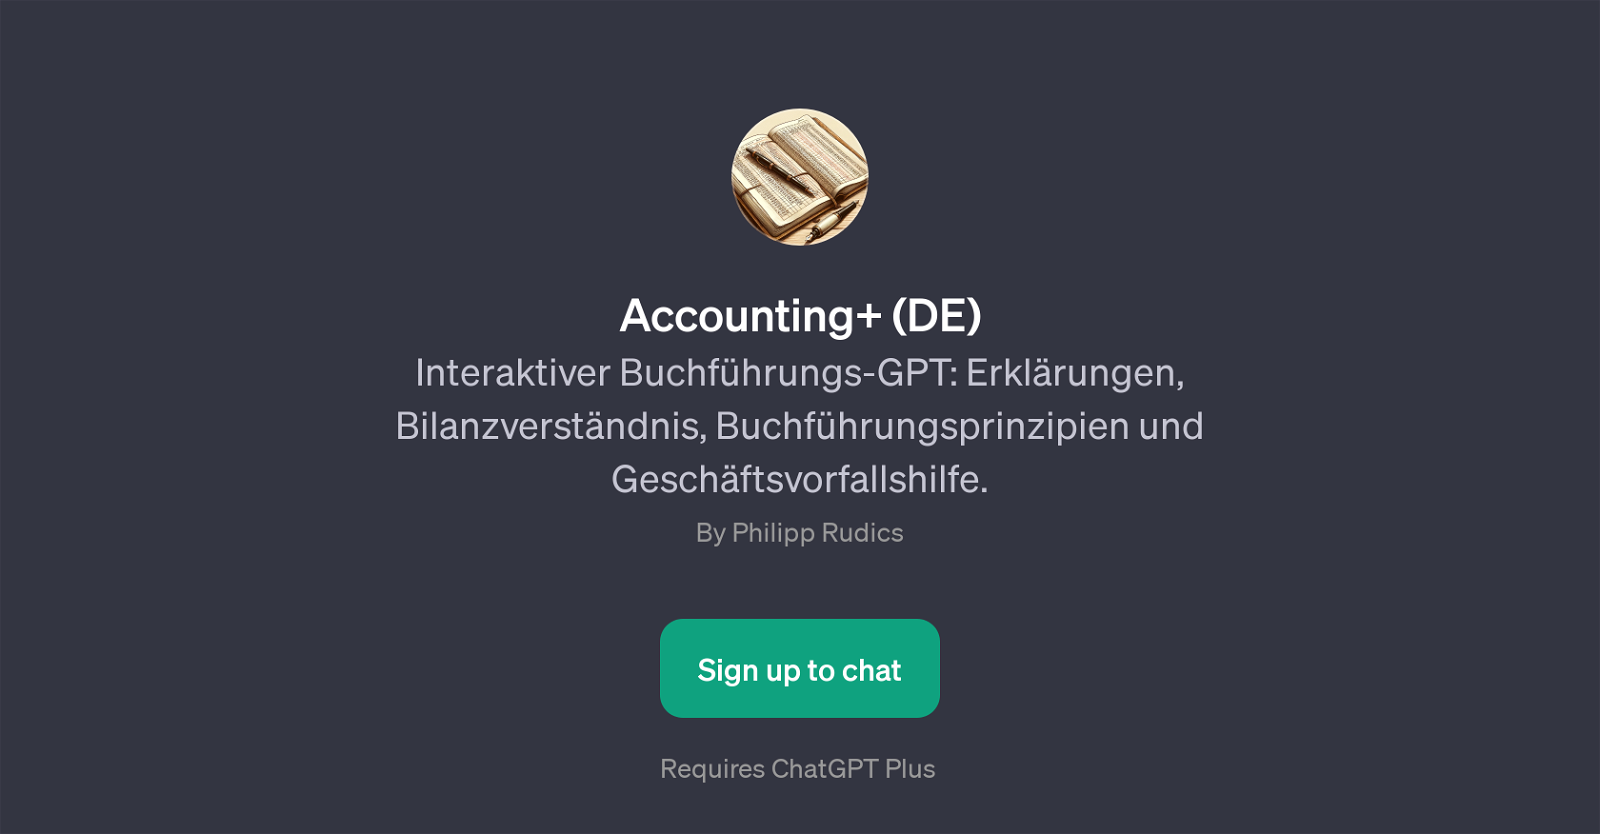 Accounting+ (DE) website